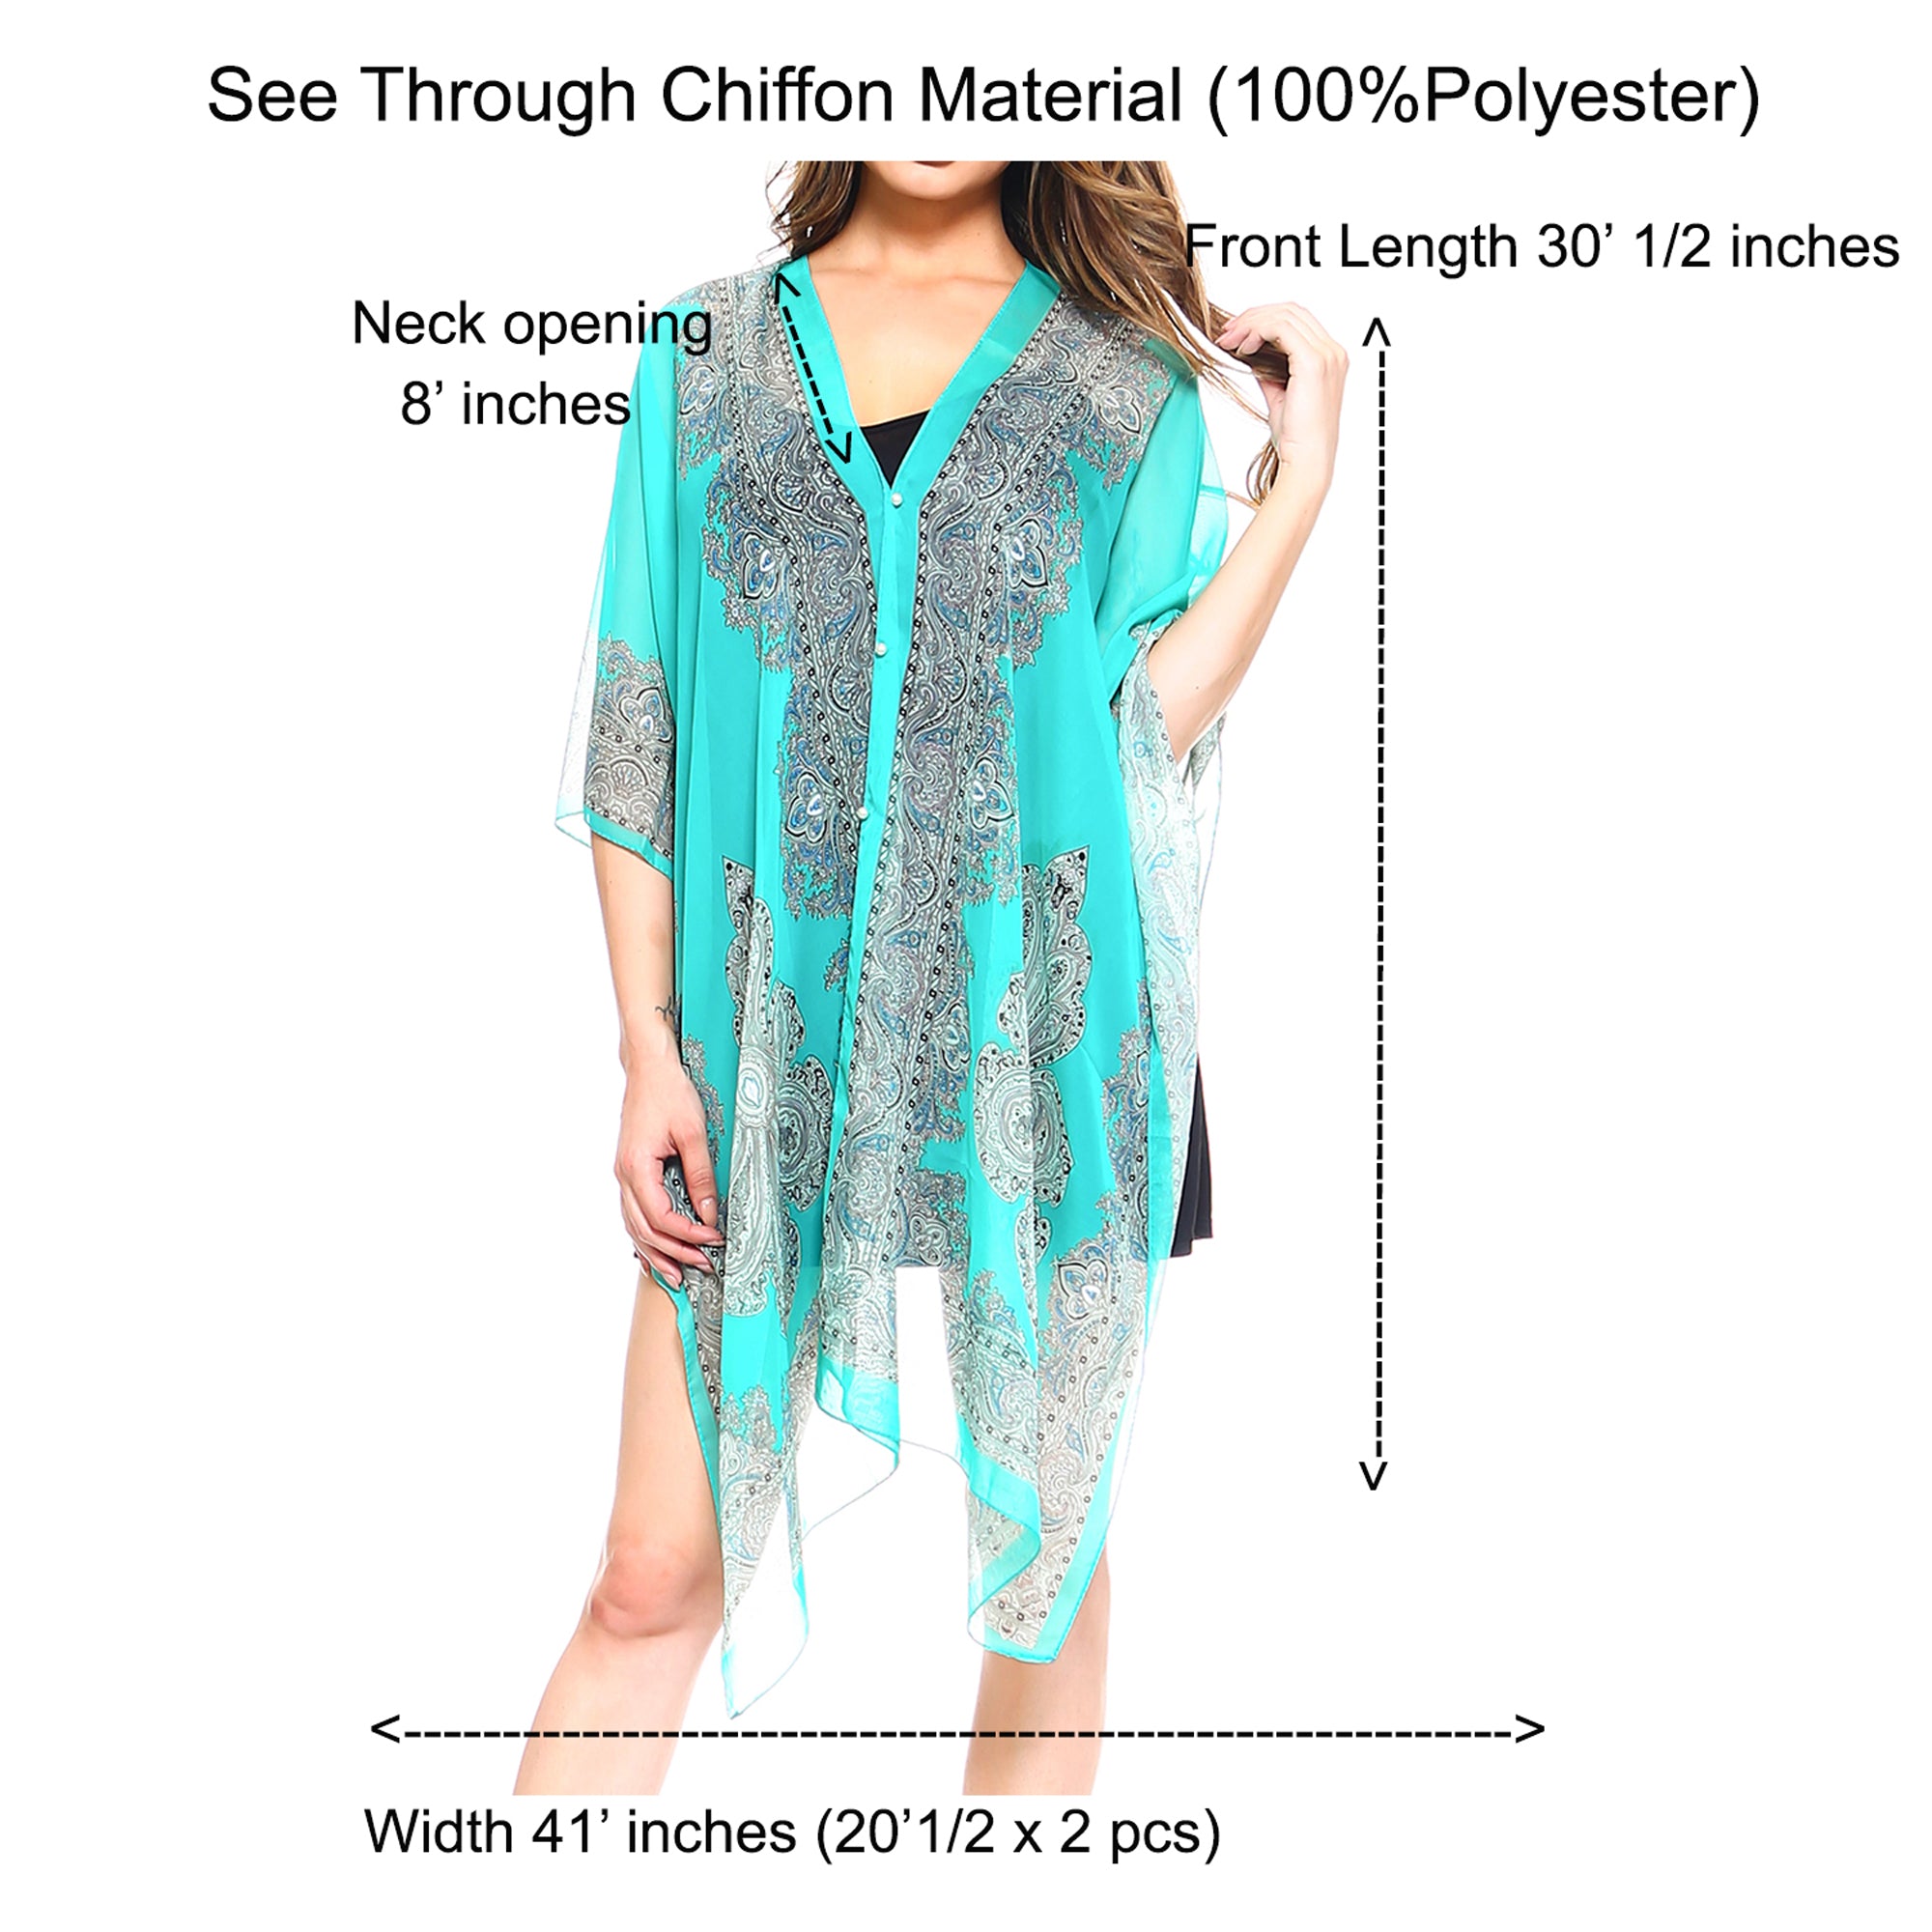 Fashionazzle Women's Colorful Cover Ups V-Neck Kimono Beach Tunic